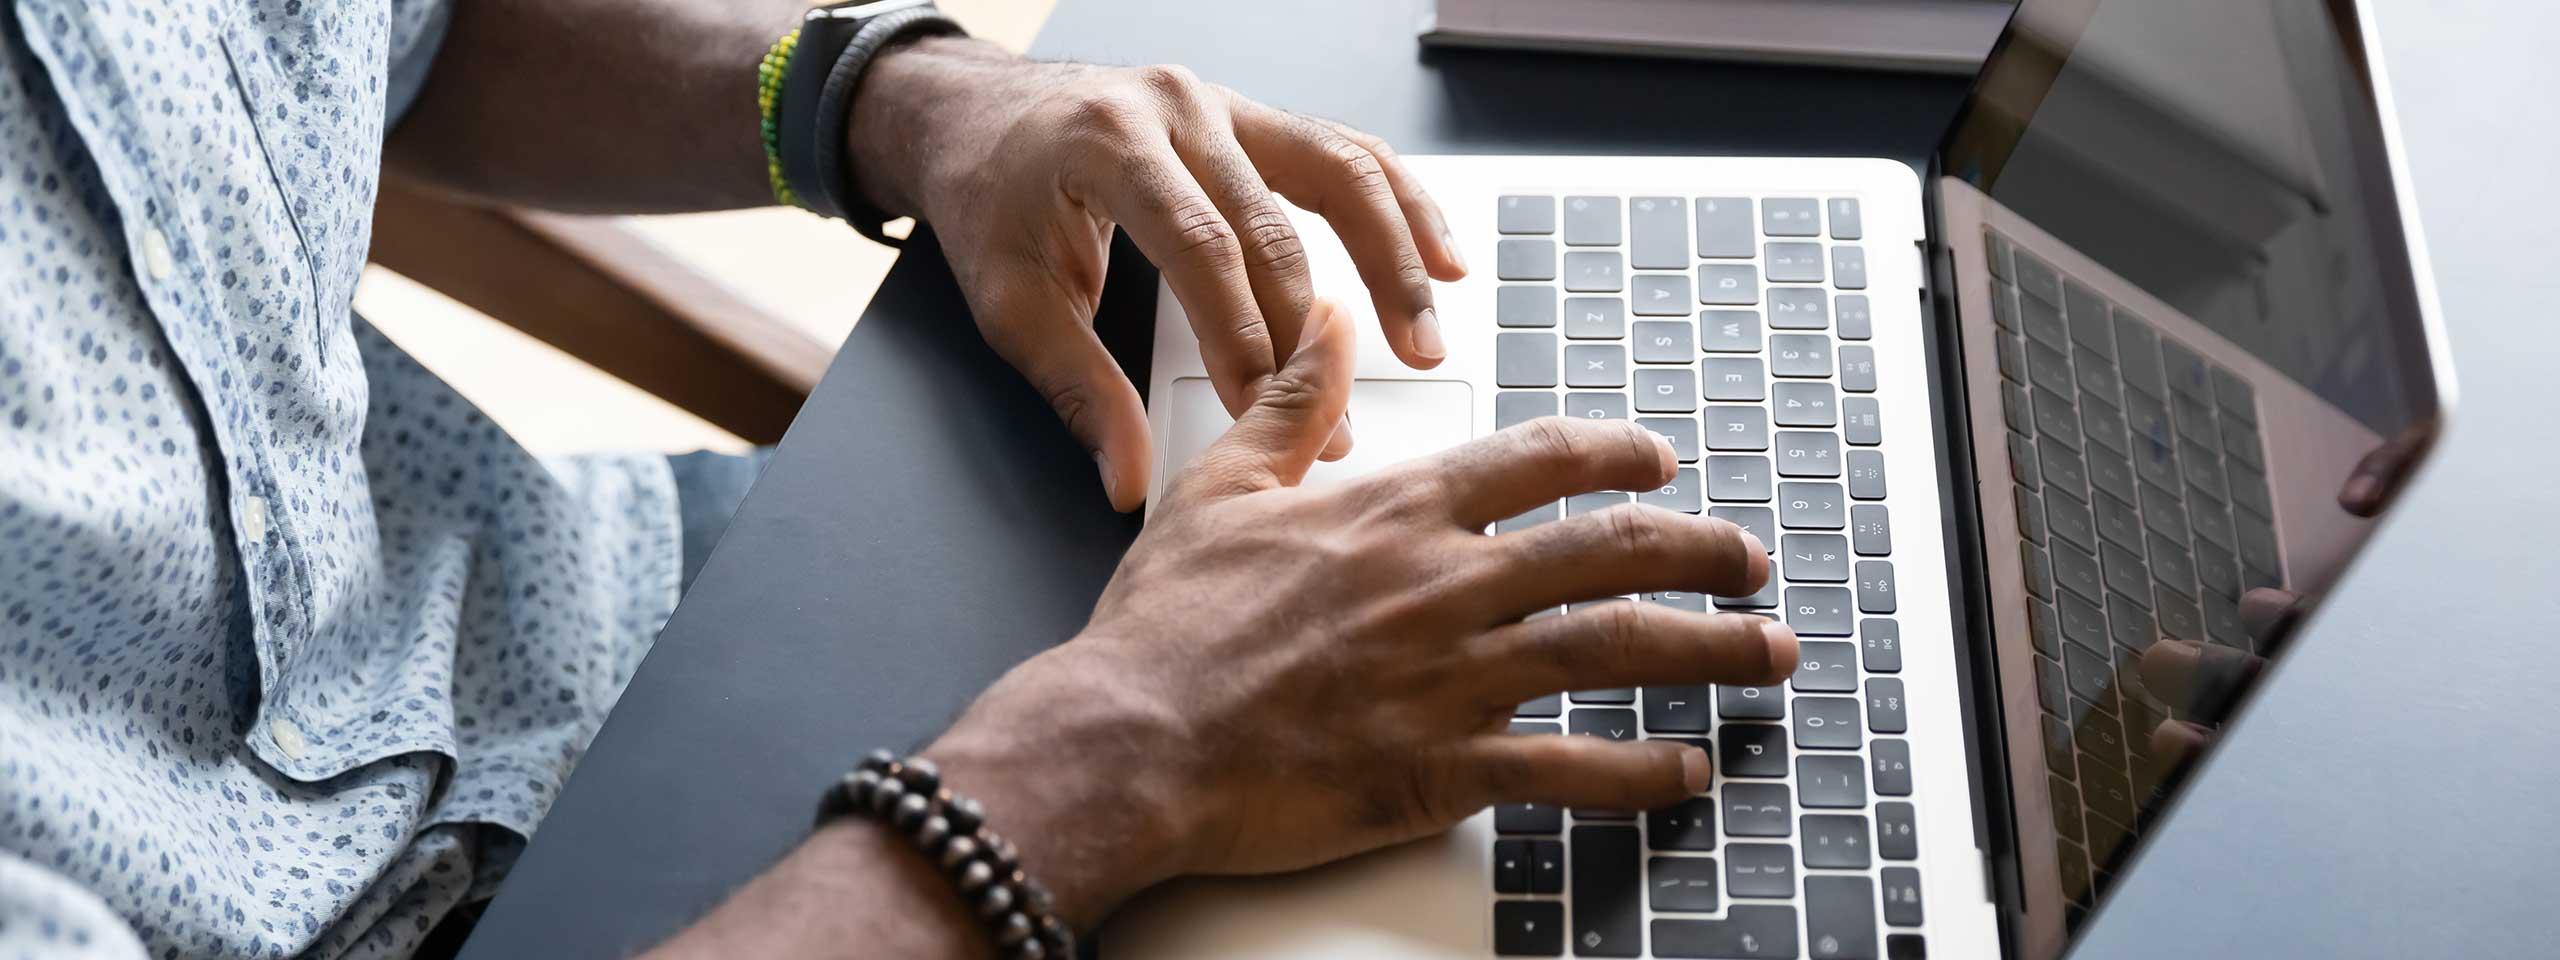 Imagen de un hombre escribiendo en una computadora portátil.